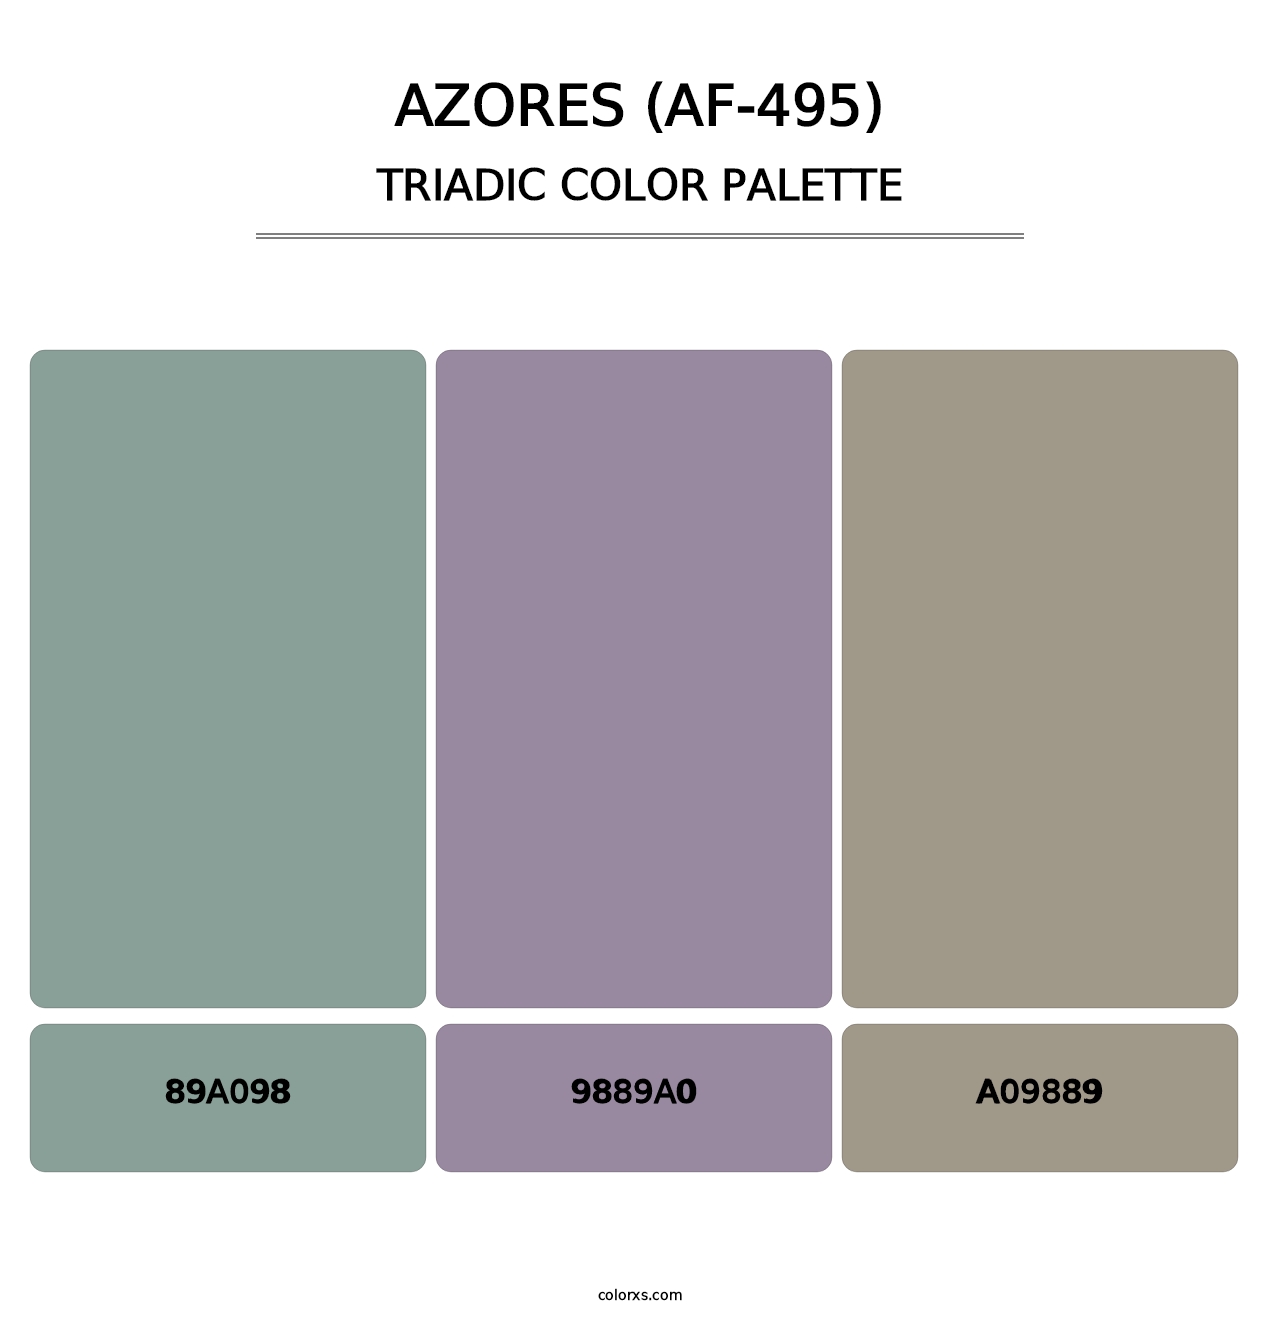 Azores (AF-495) - Triadic Color Palette